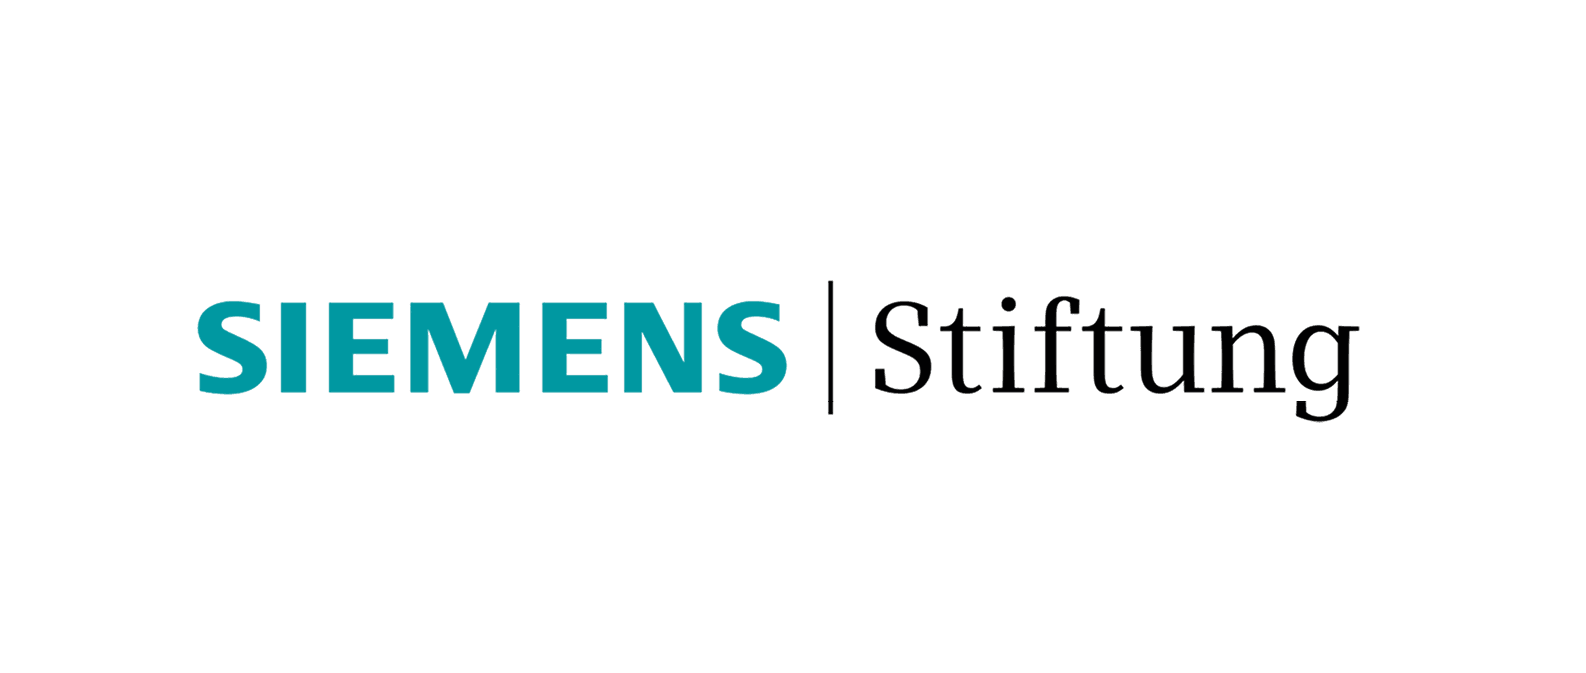 Logo der Siemens Stiftung